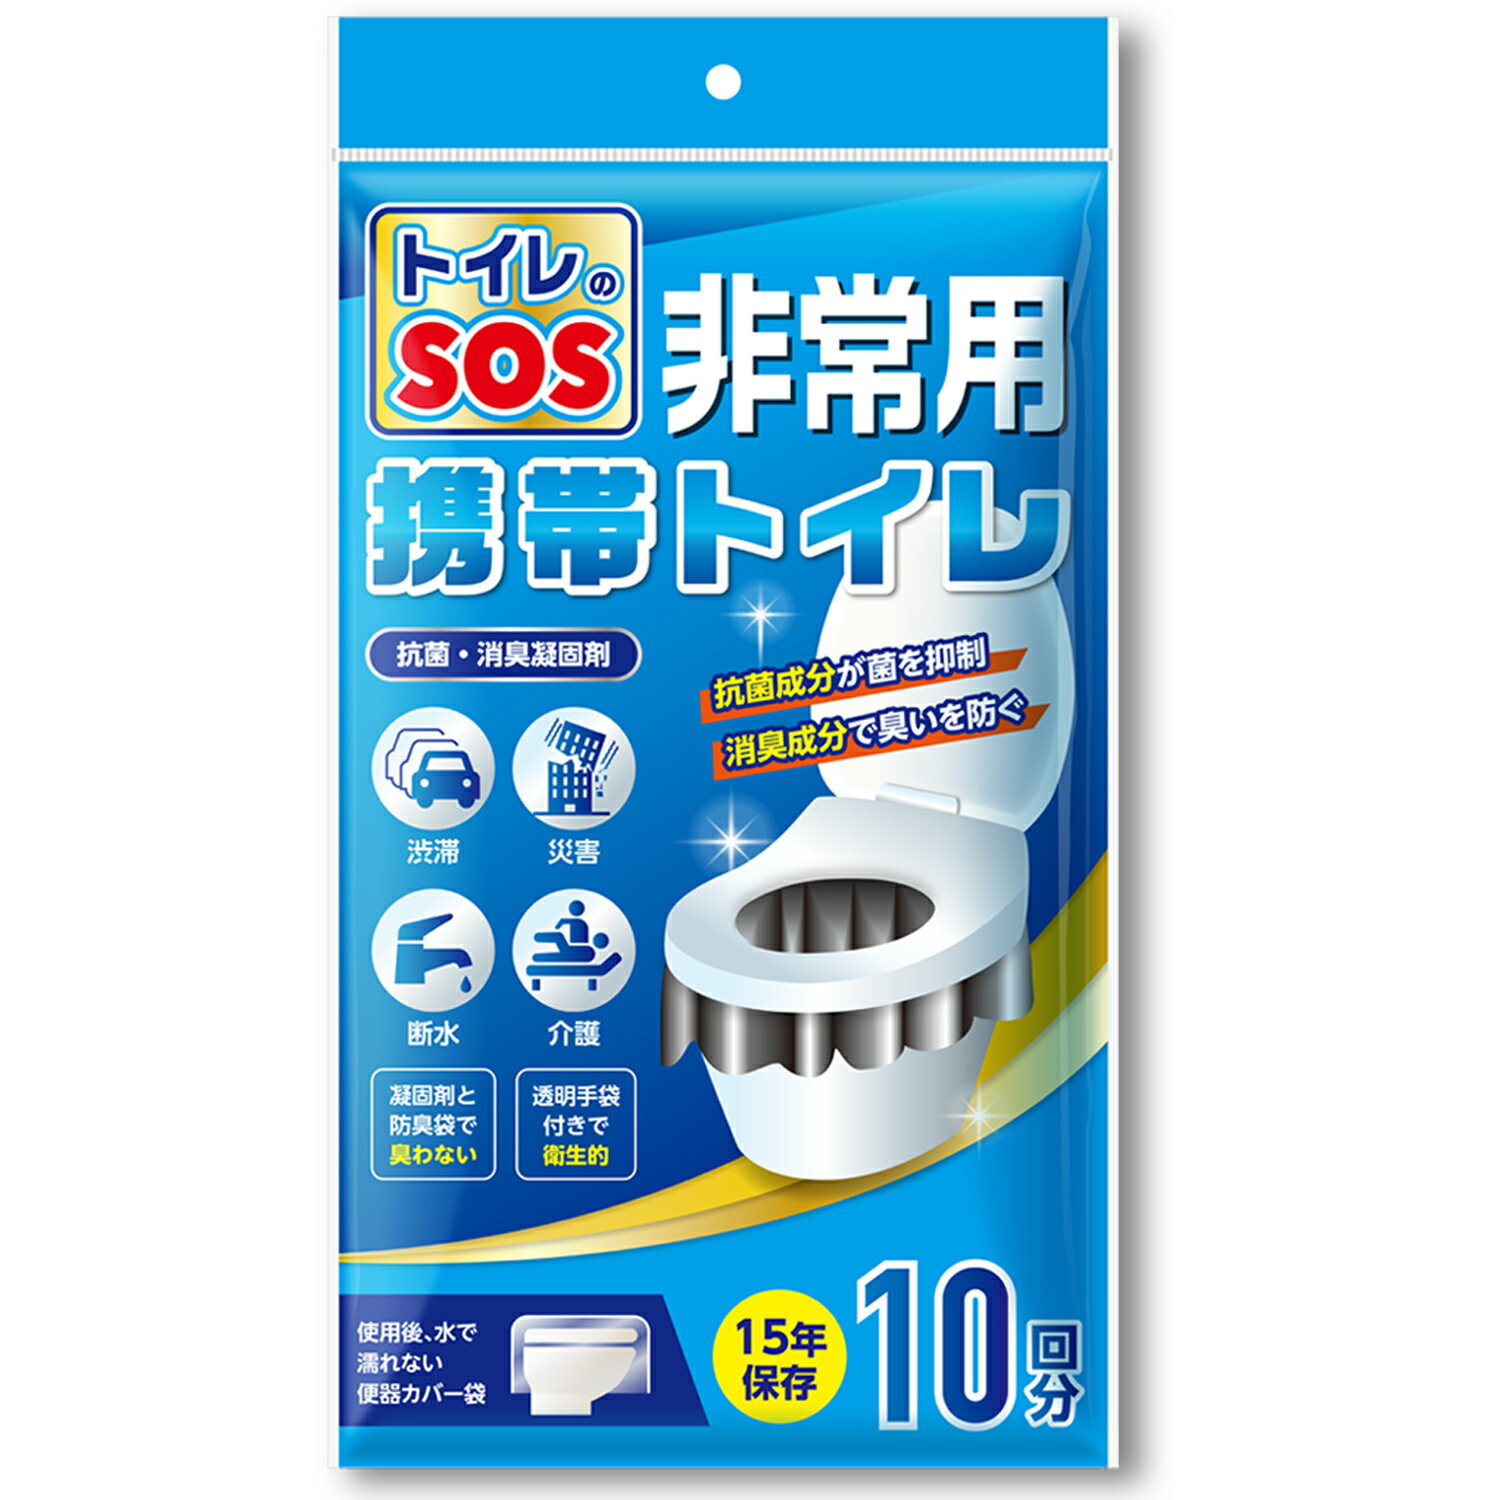 トイレのSOS【防災士監修】 簡易トイレ 携帯ト...の商品画像